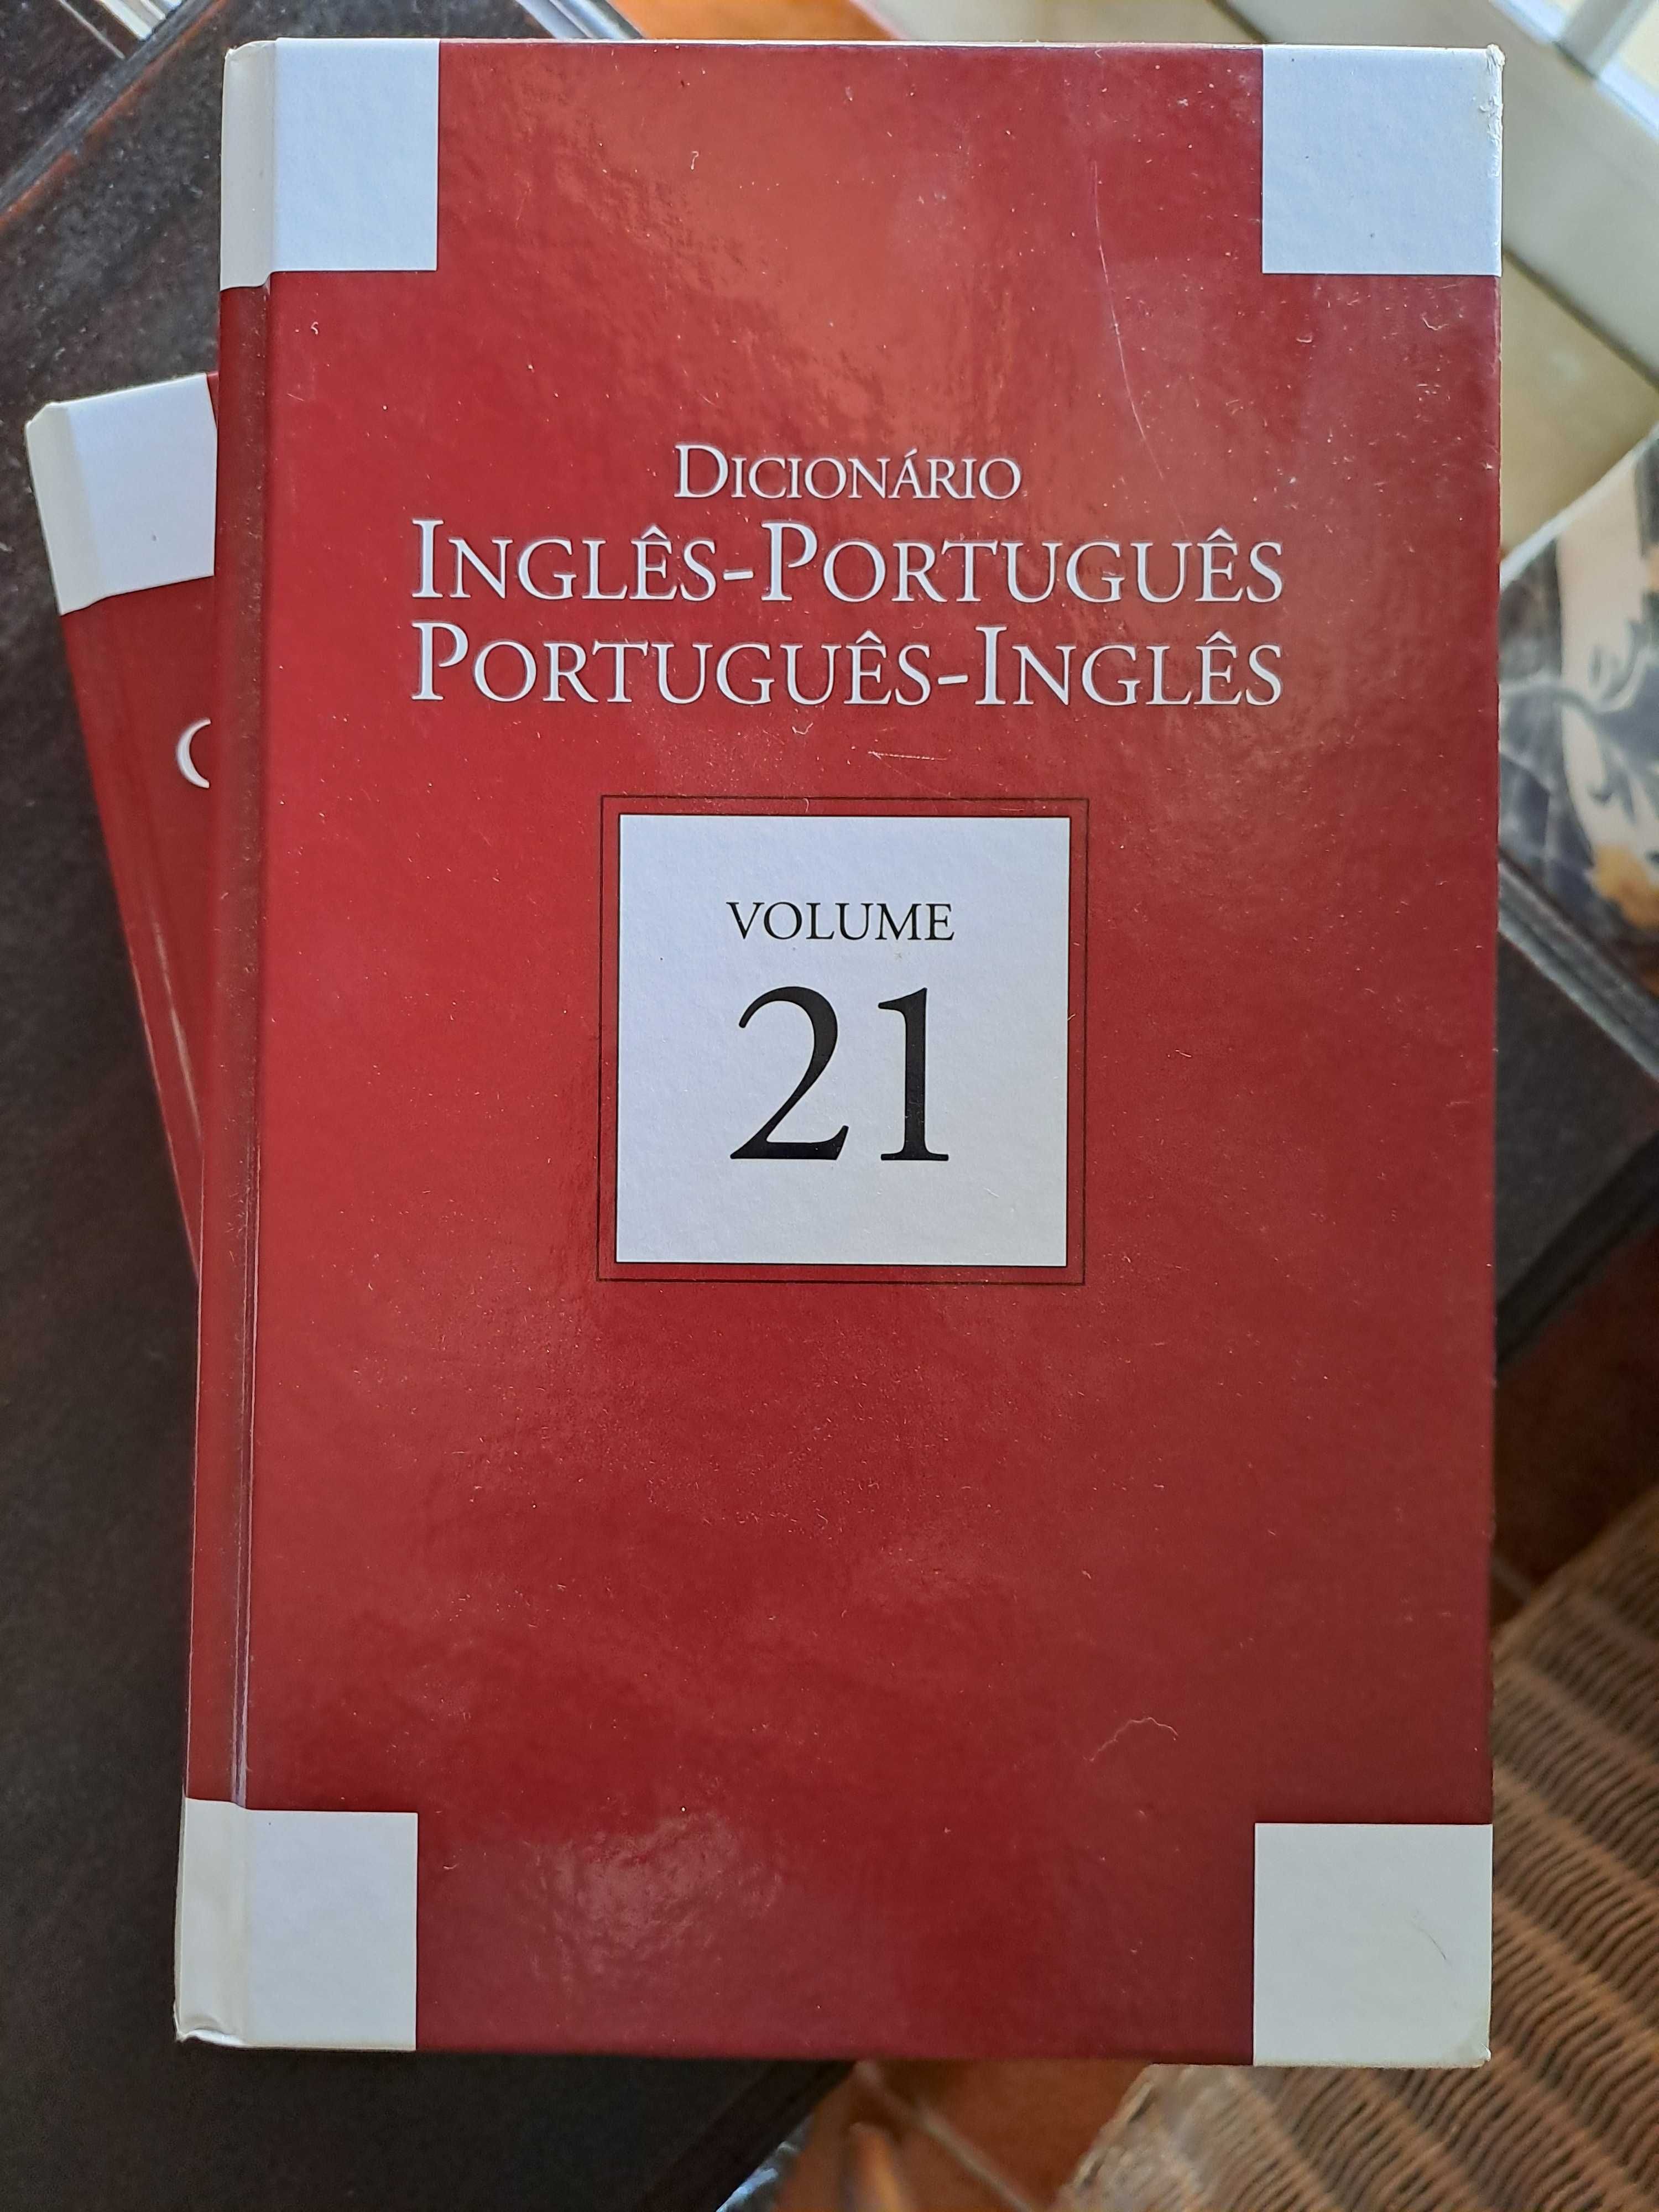 Dicionários / Enciclopédias / Biografias